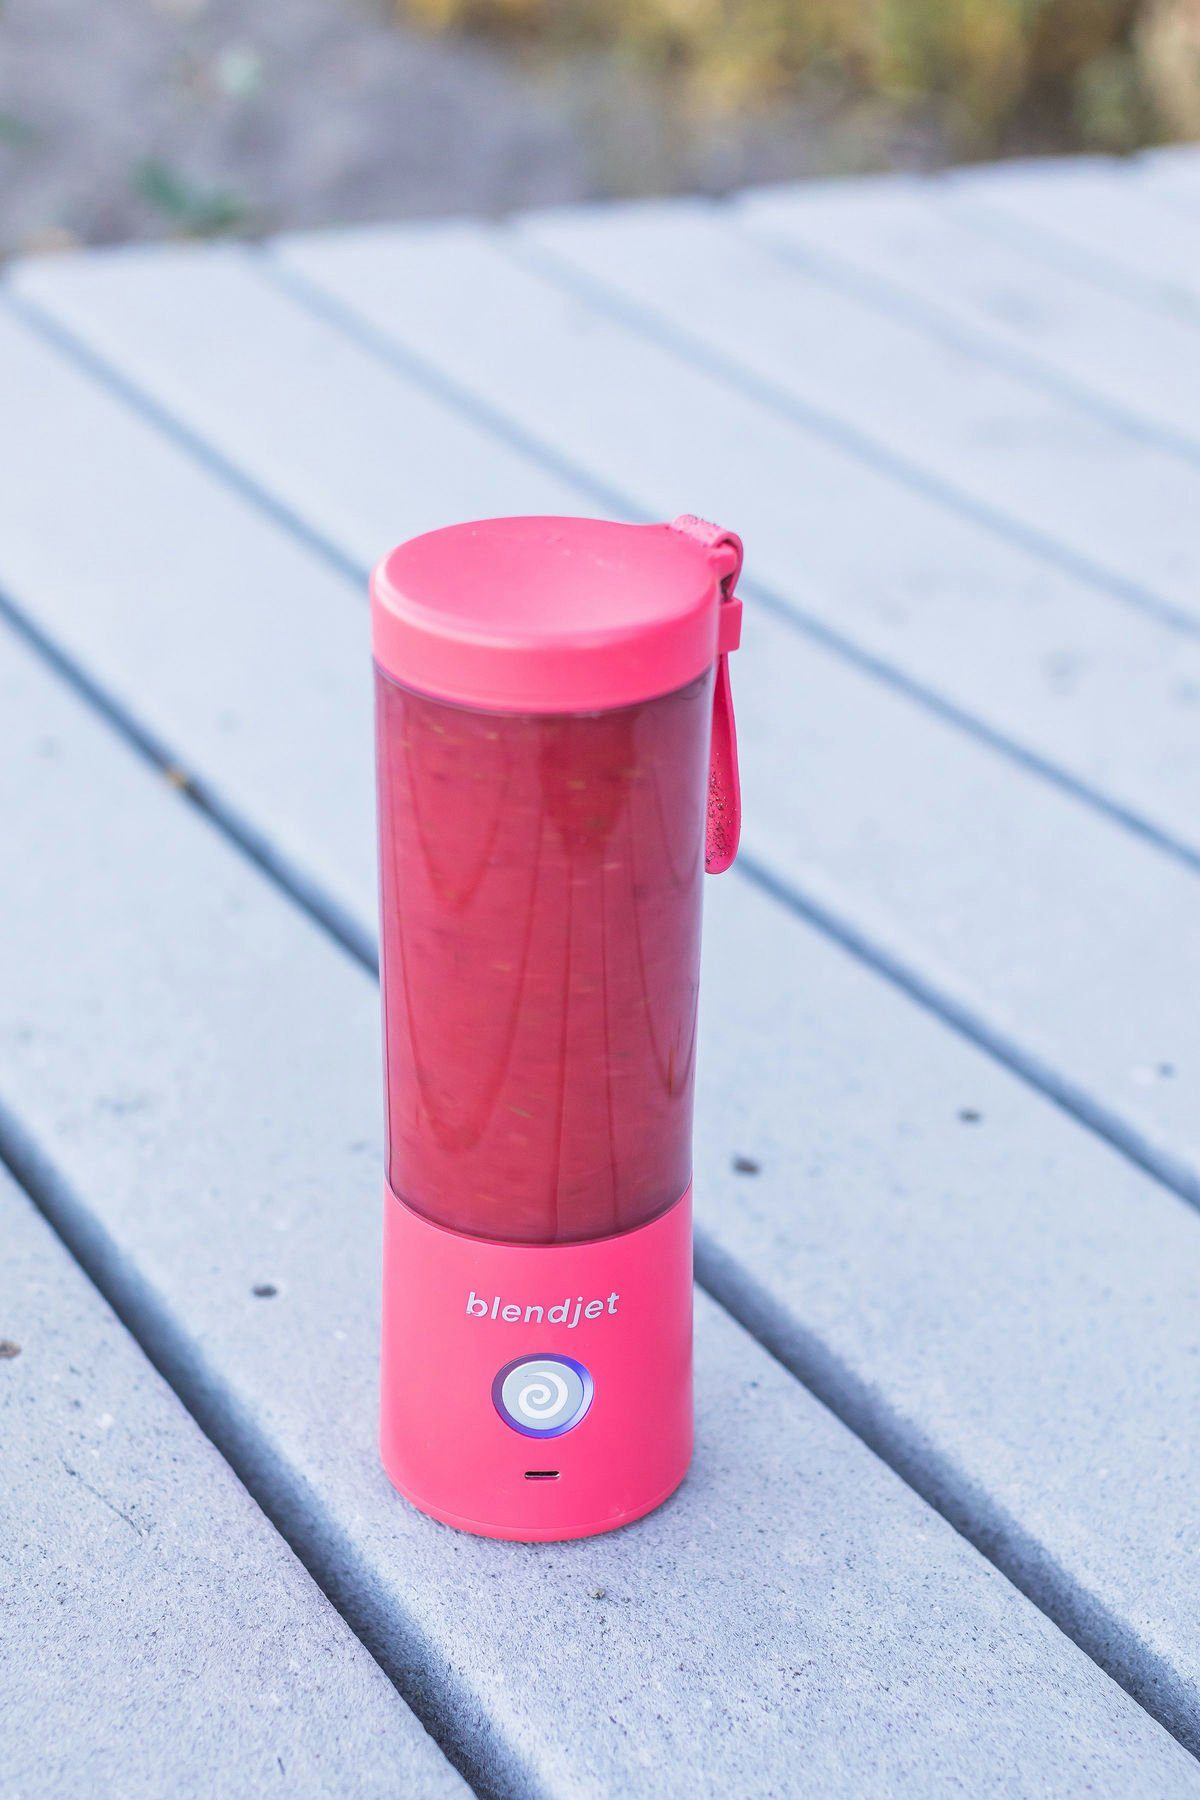 Portable Akku-Smoothie-Maker blendjet Hot Pink 2 BlendJet Blender